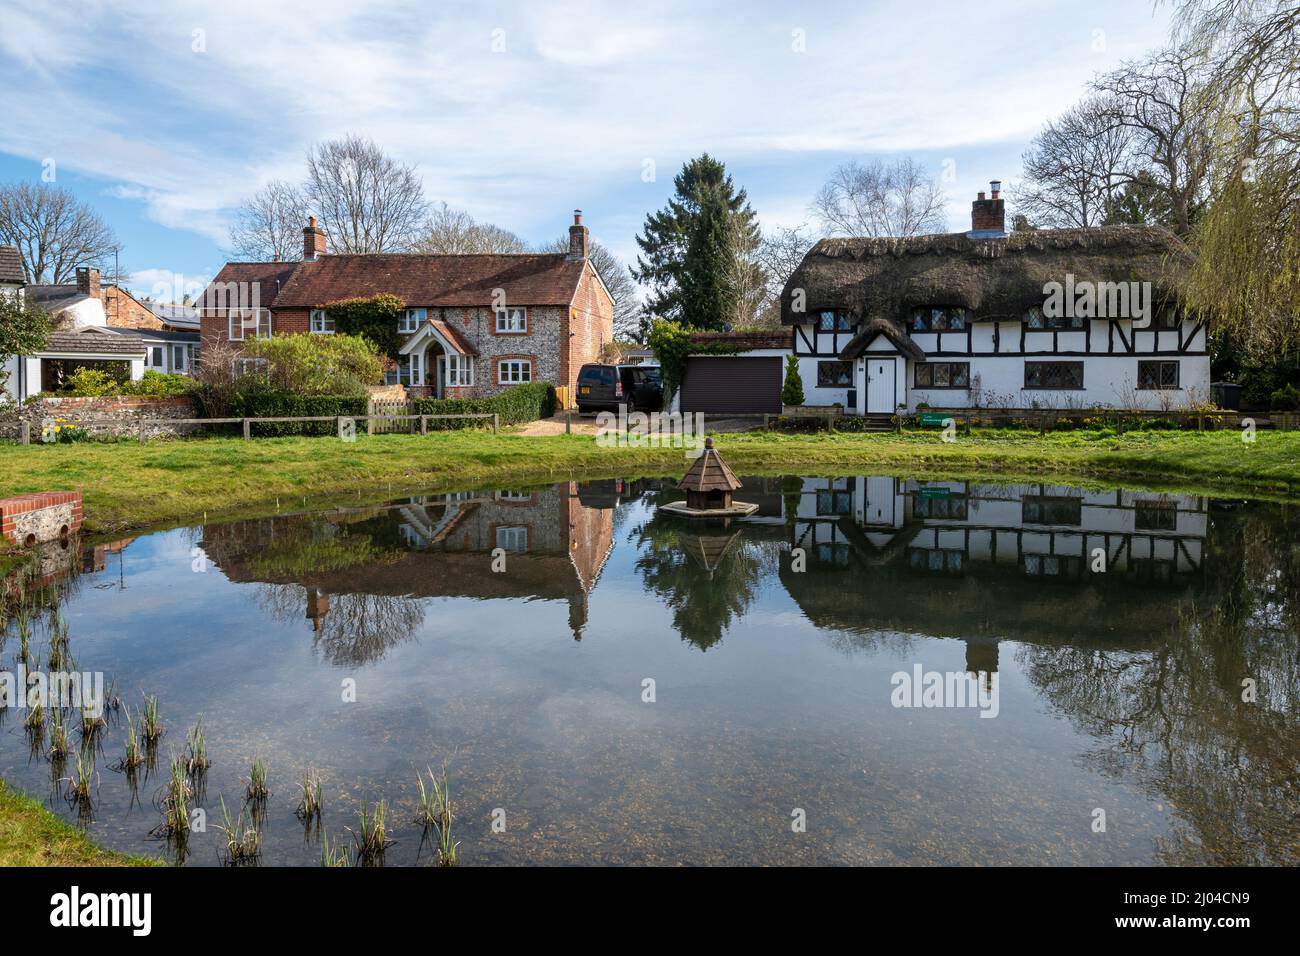 Village d'Oakley avec étang à canards et chalets dans le Hampshire, Angleterre, Royaume-Uni Banque D'Images